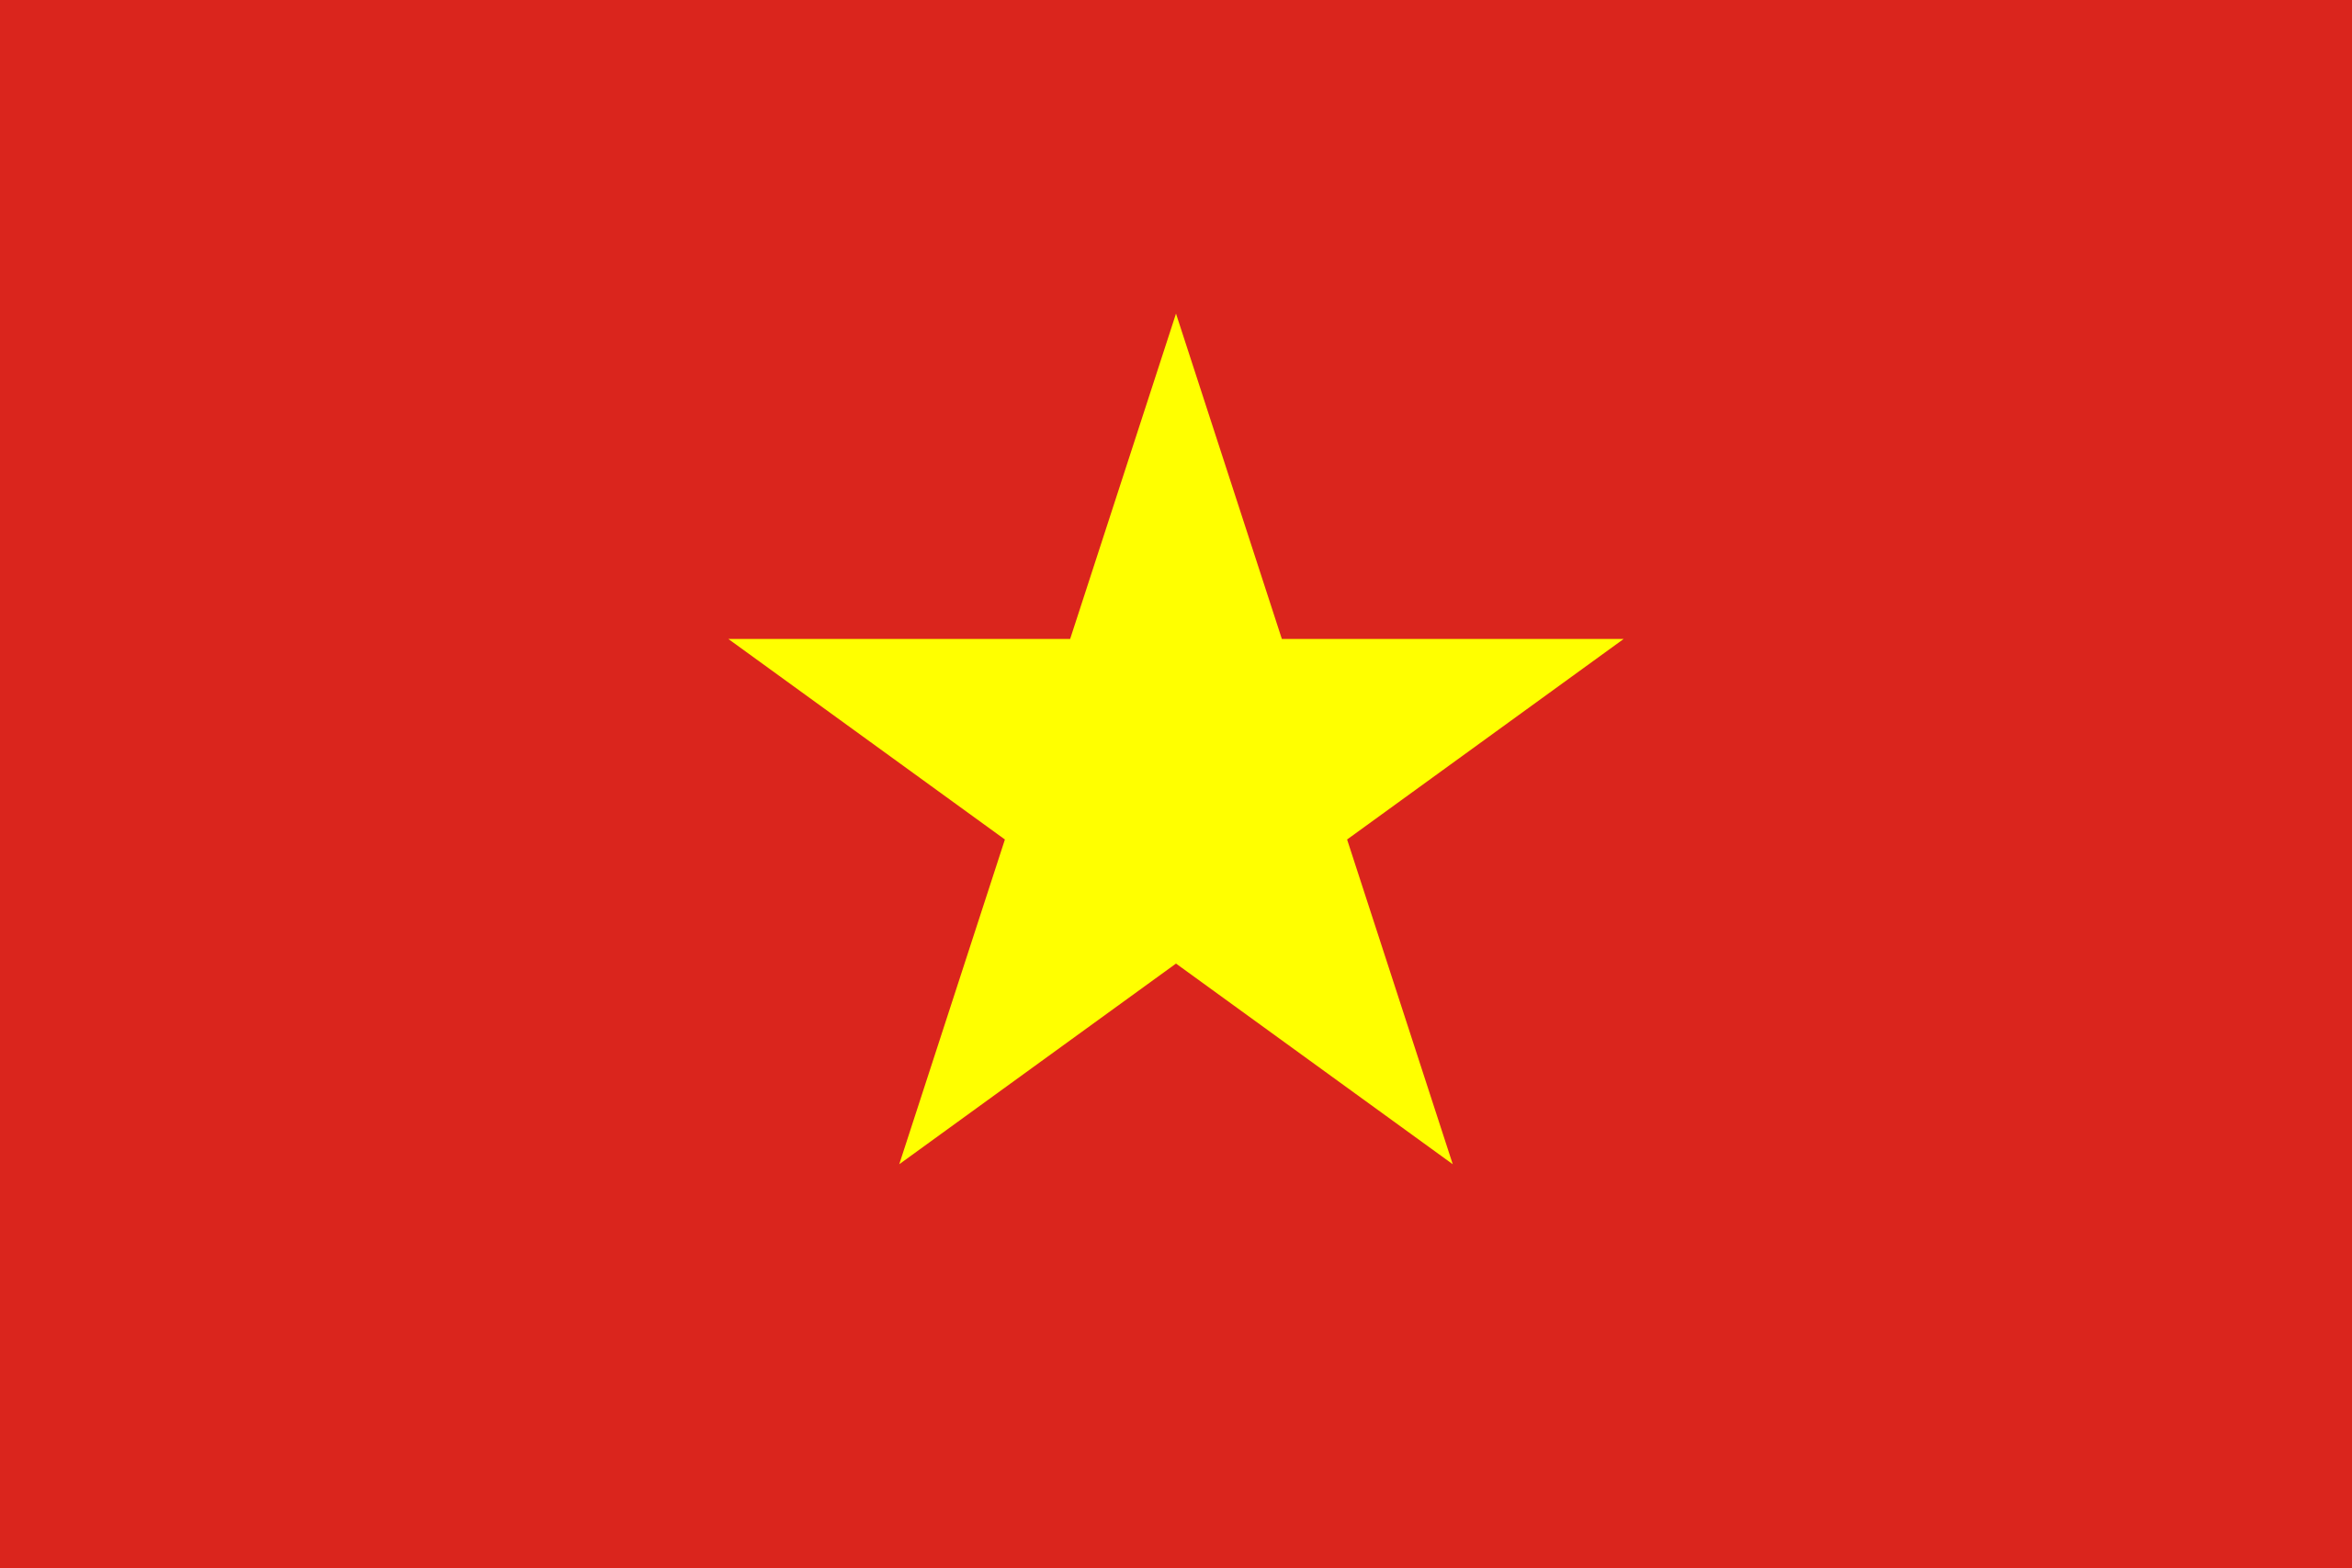 100 Hình Nền Cờ Việt Nam  Lá Cờ Đỏ Sao Vàng Đầy Tự Hào